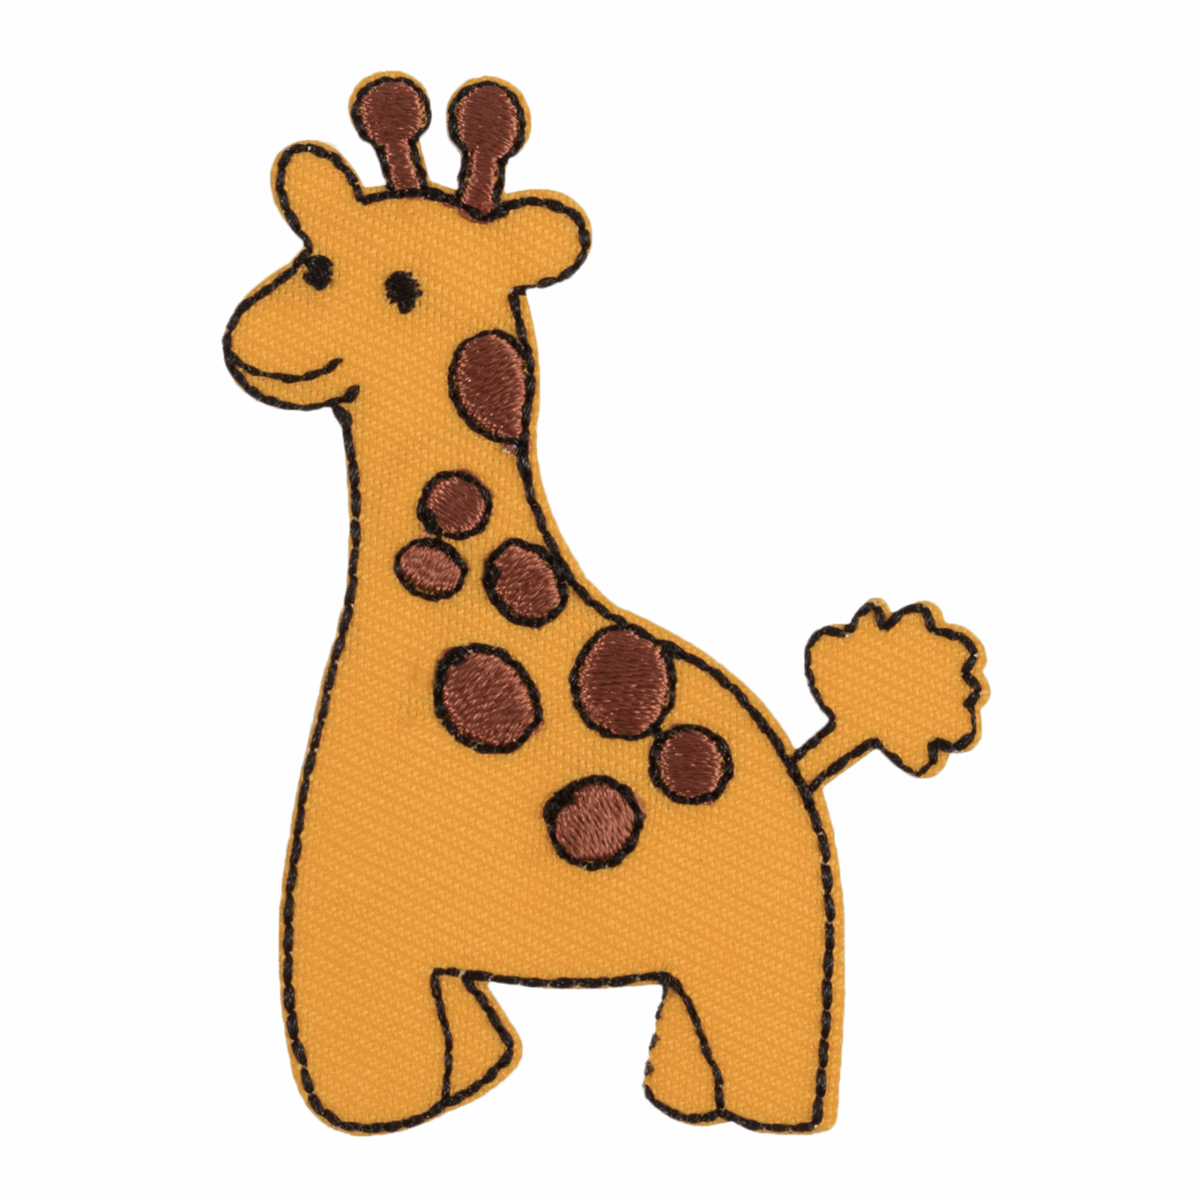 Motif A: Giraffe